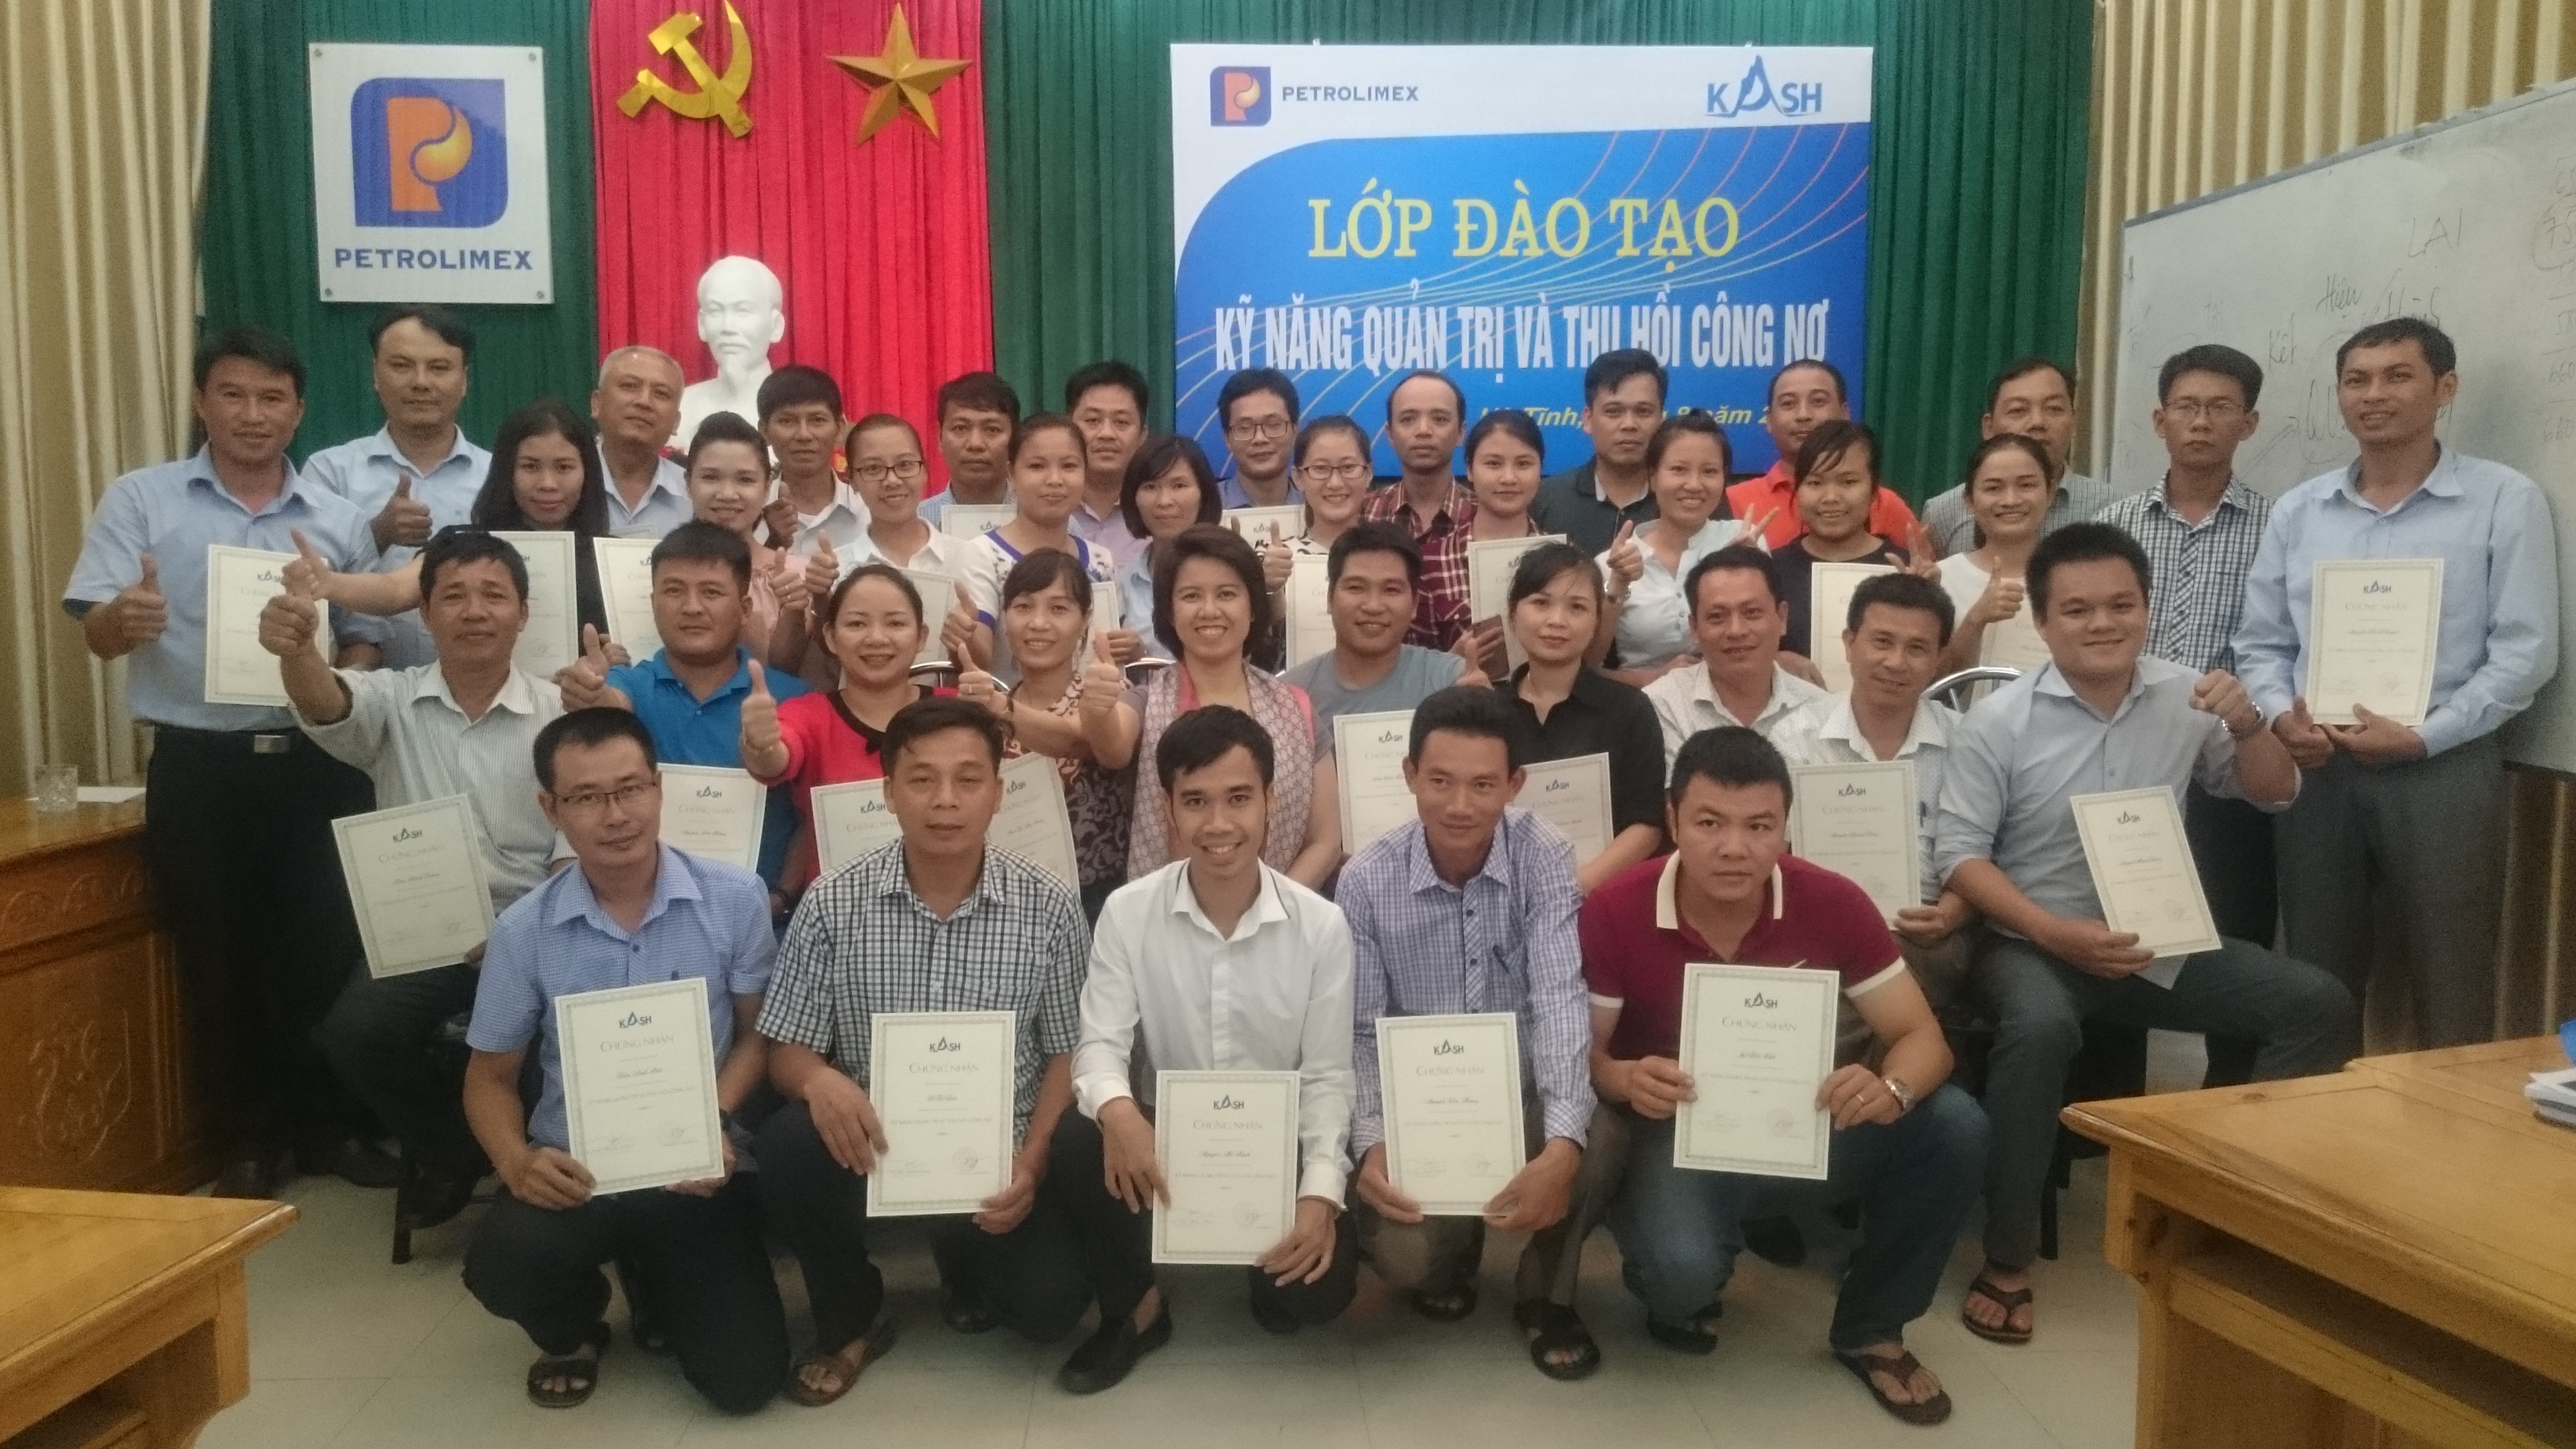 Thạc sỹ Tạ Thị Phước Thạnh - giảng viên khóa học trao chứng nhận cho cấc học viên